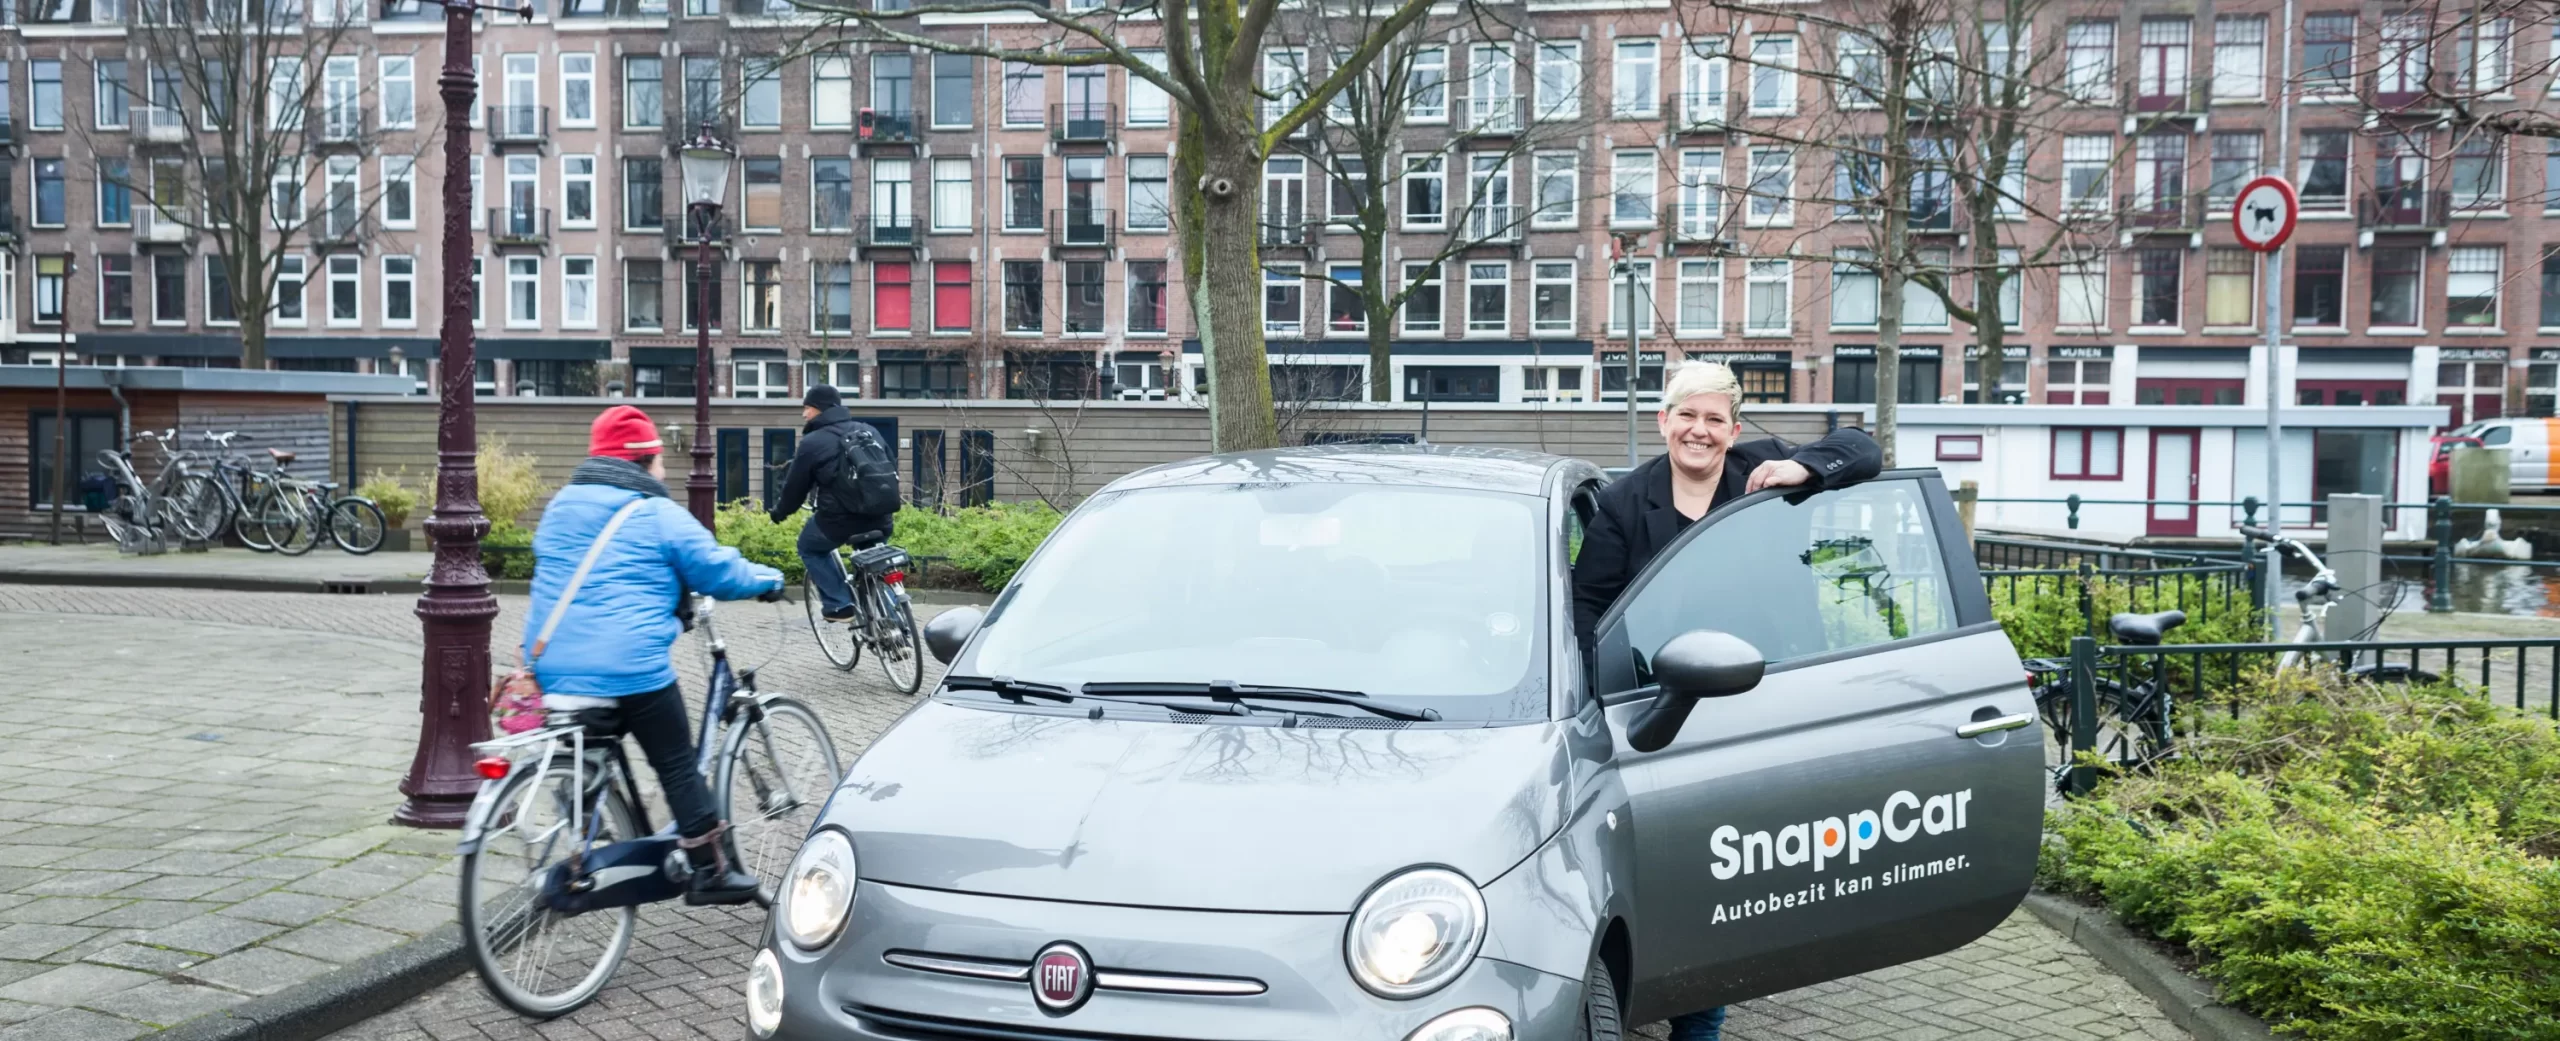 Private leaseklanten verdienen aan hun DirectLease auto met SnappCar autodelen